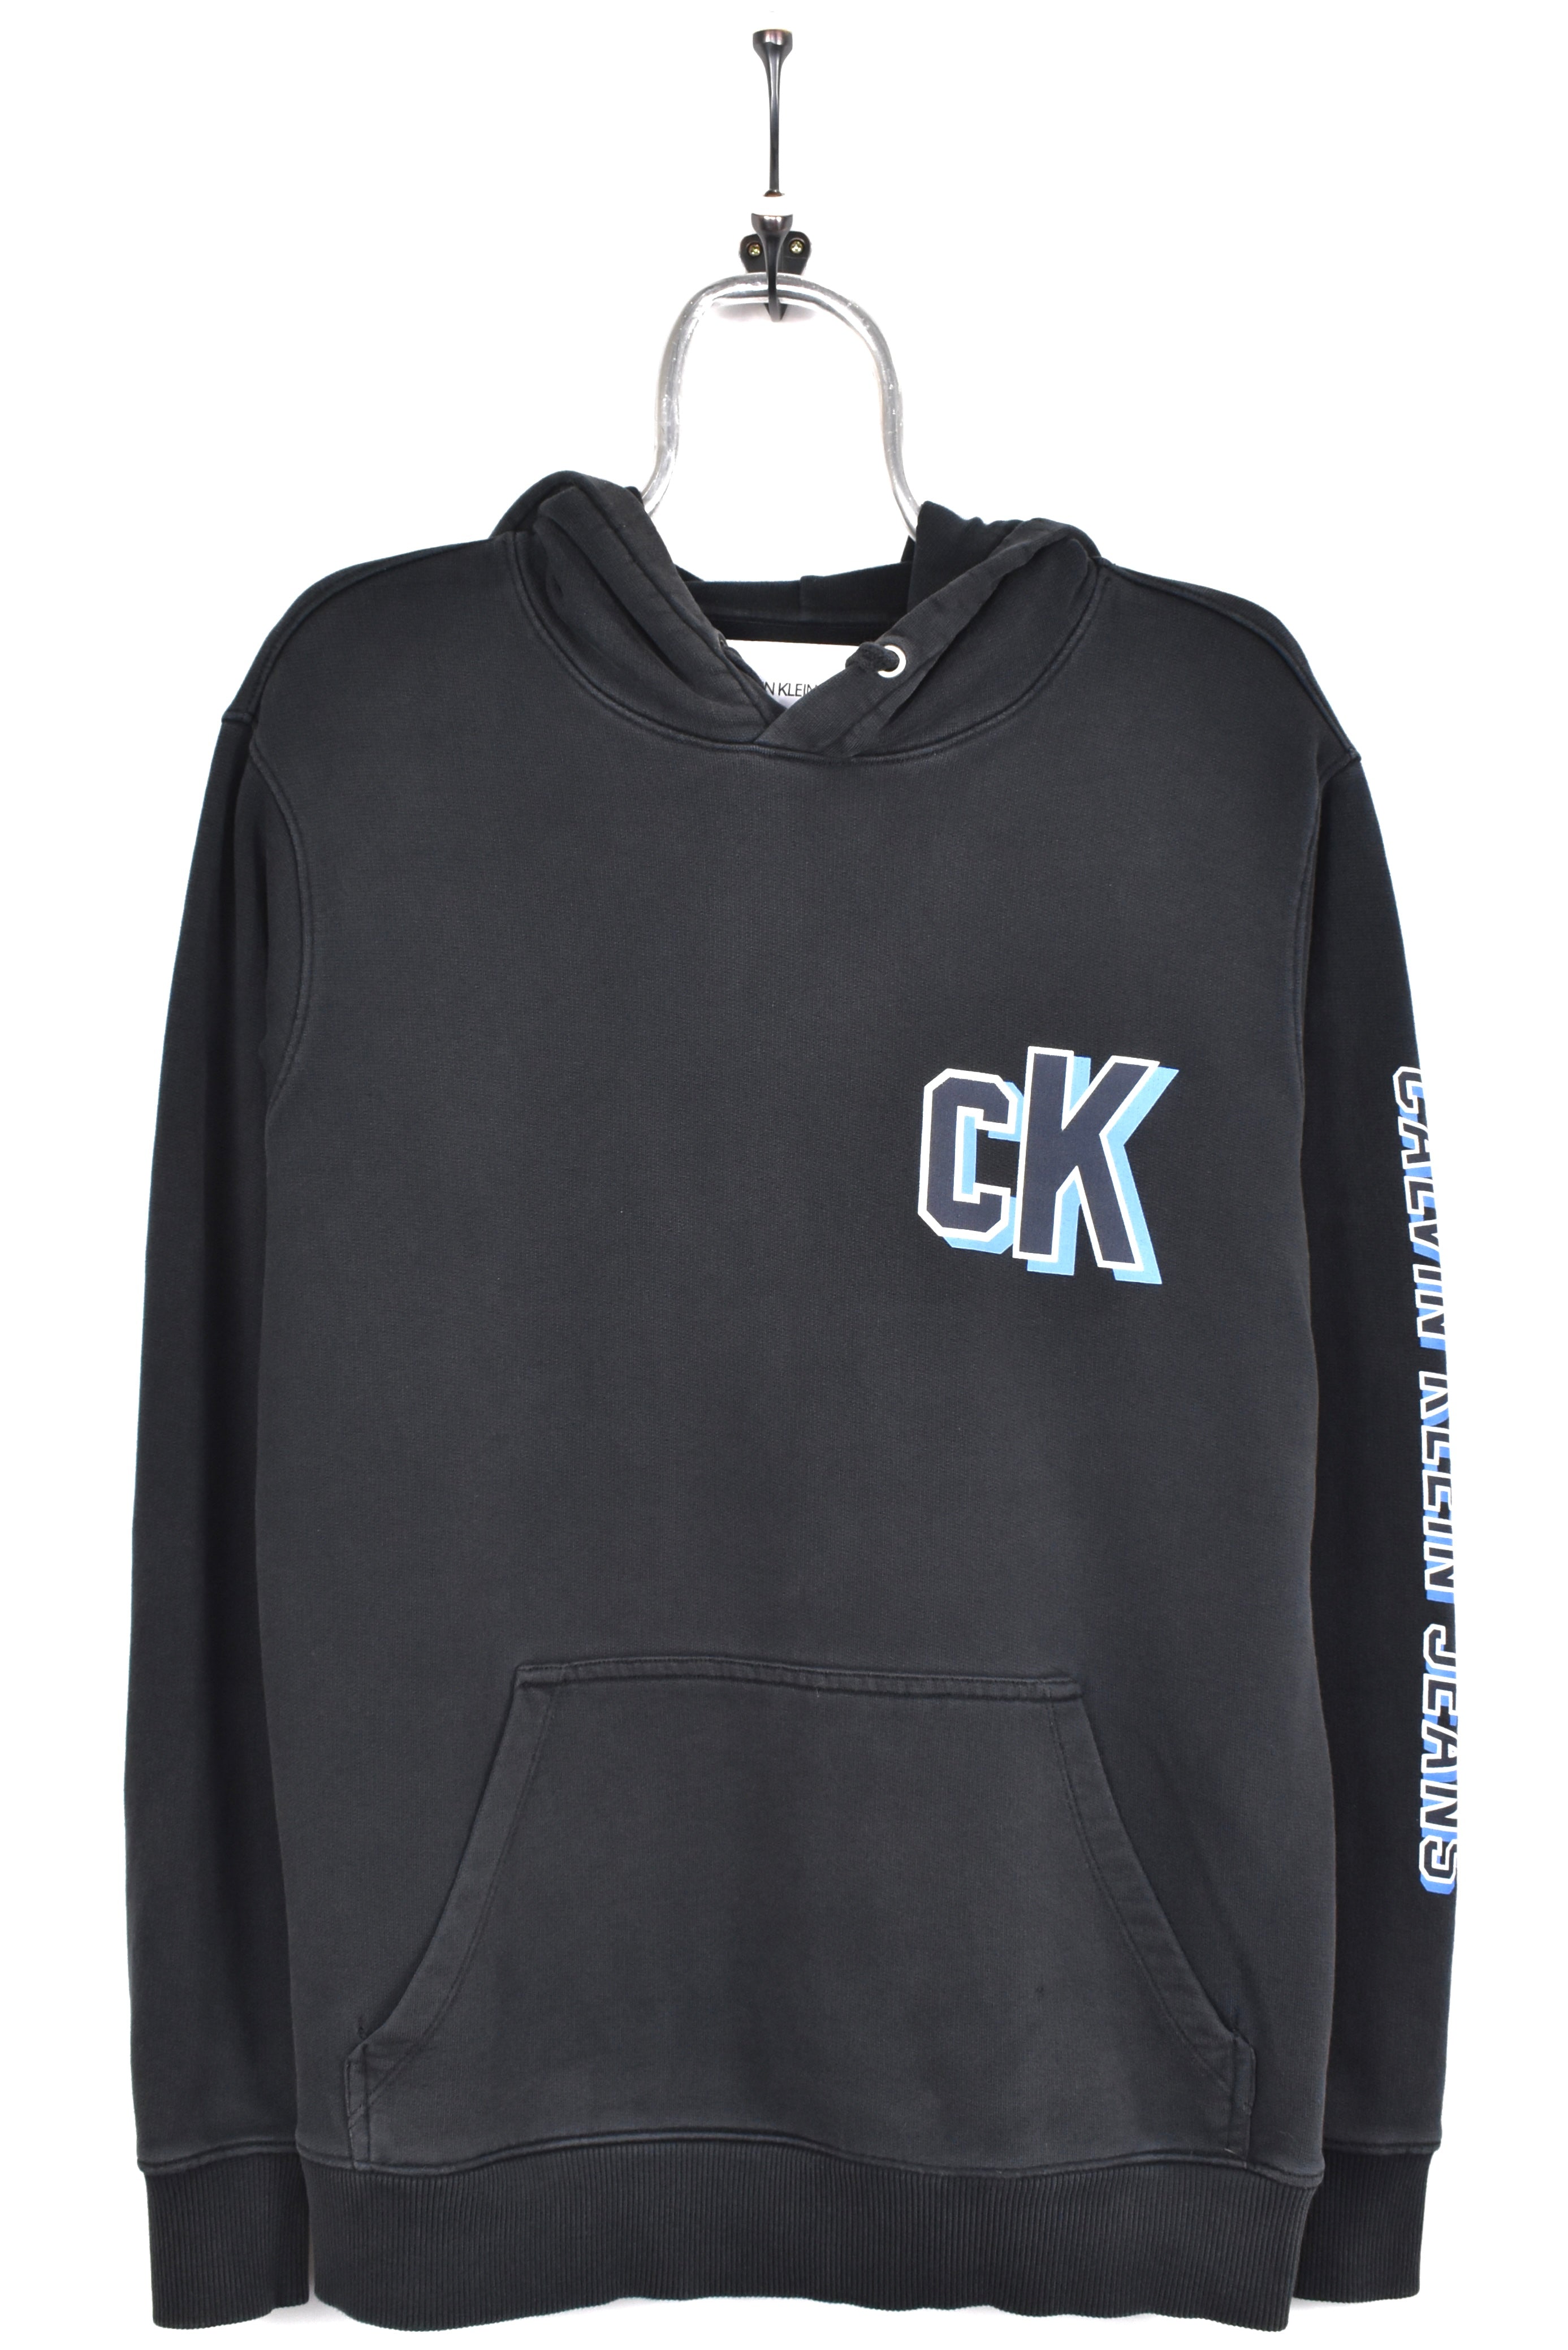 Modern Calvin Klein hoodie, black graphic sweatshirt - AU M CALVIN KLEIN